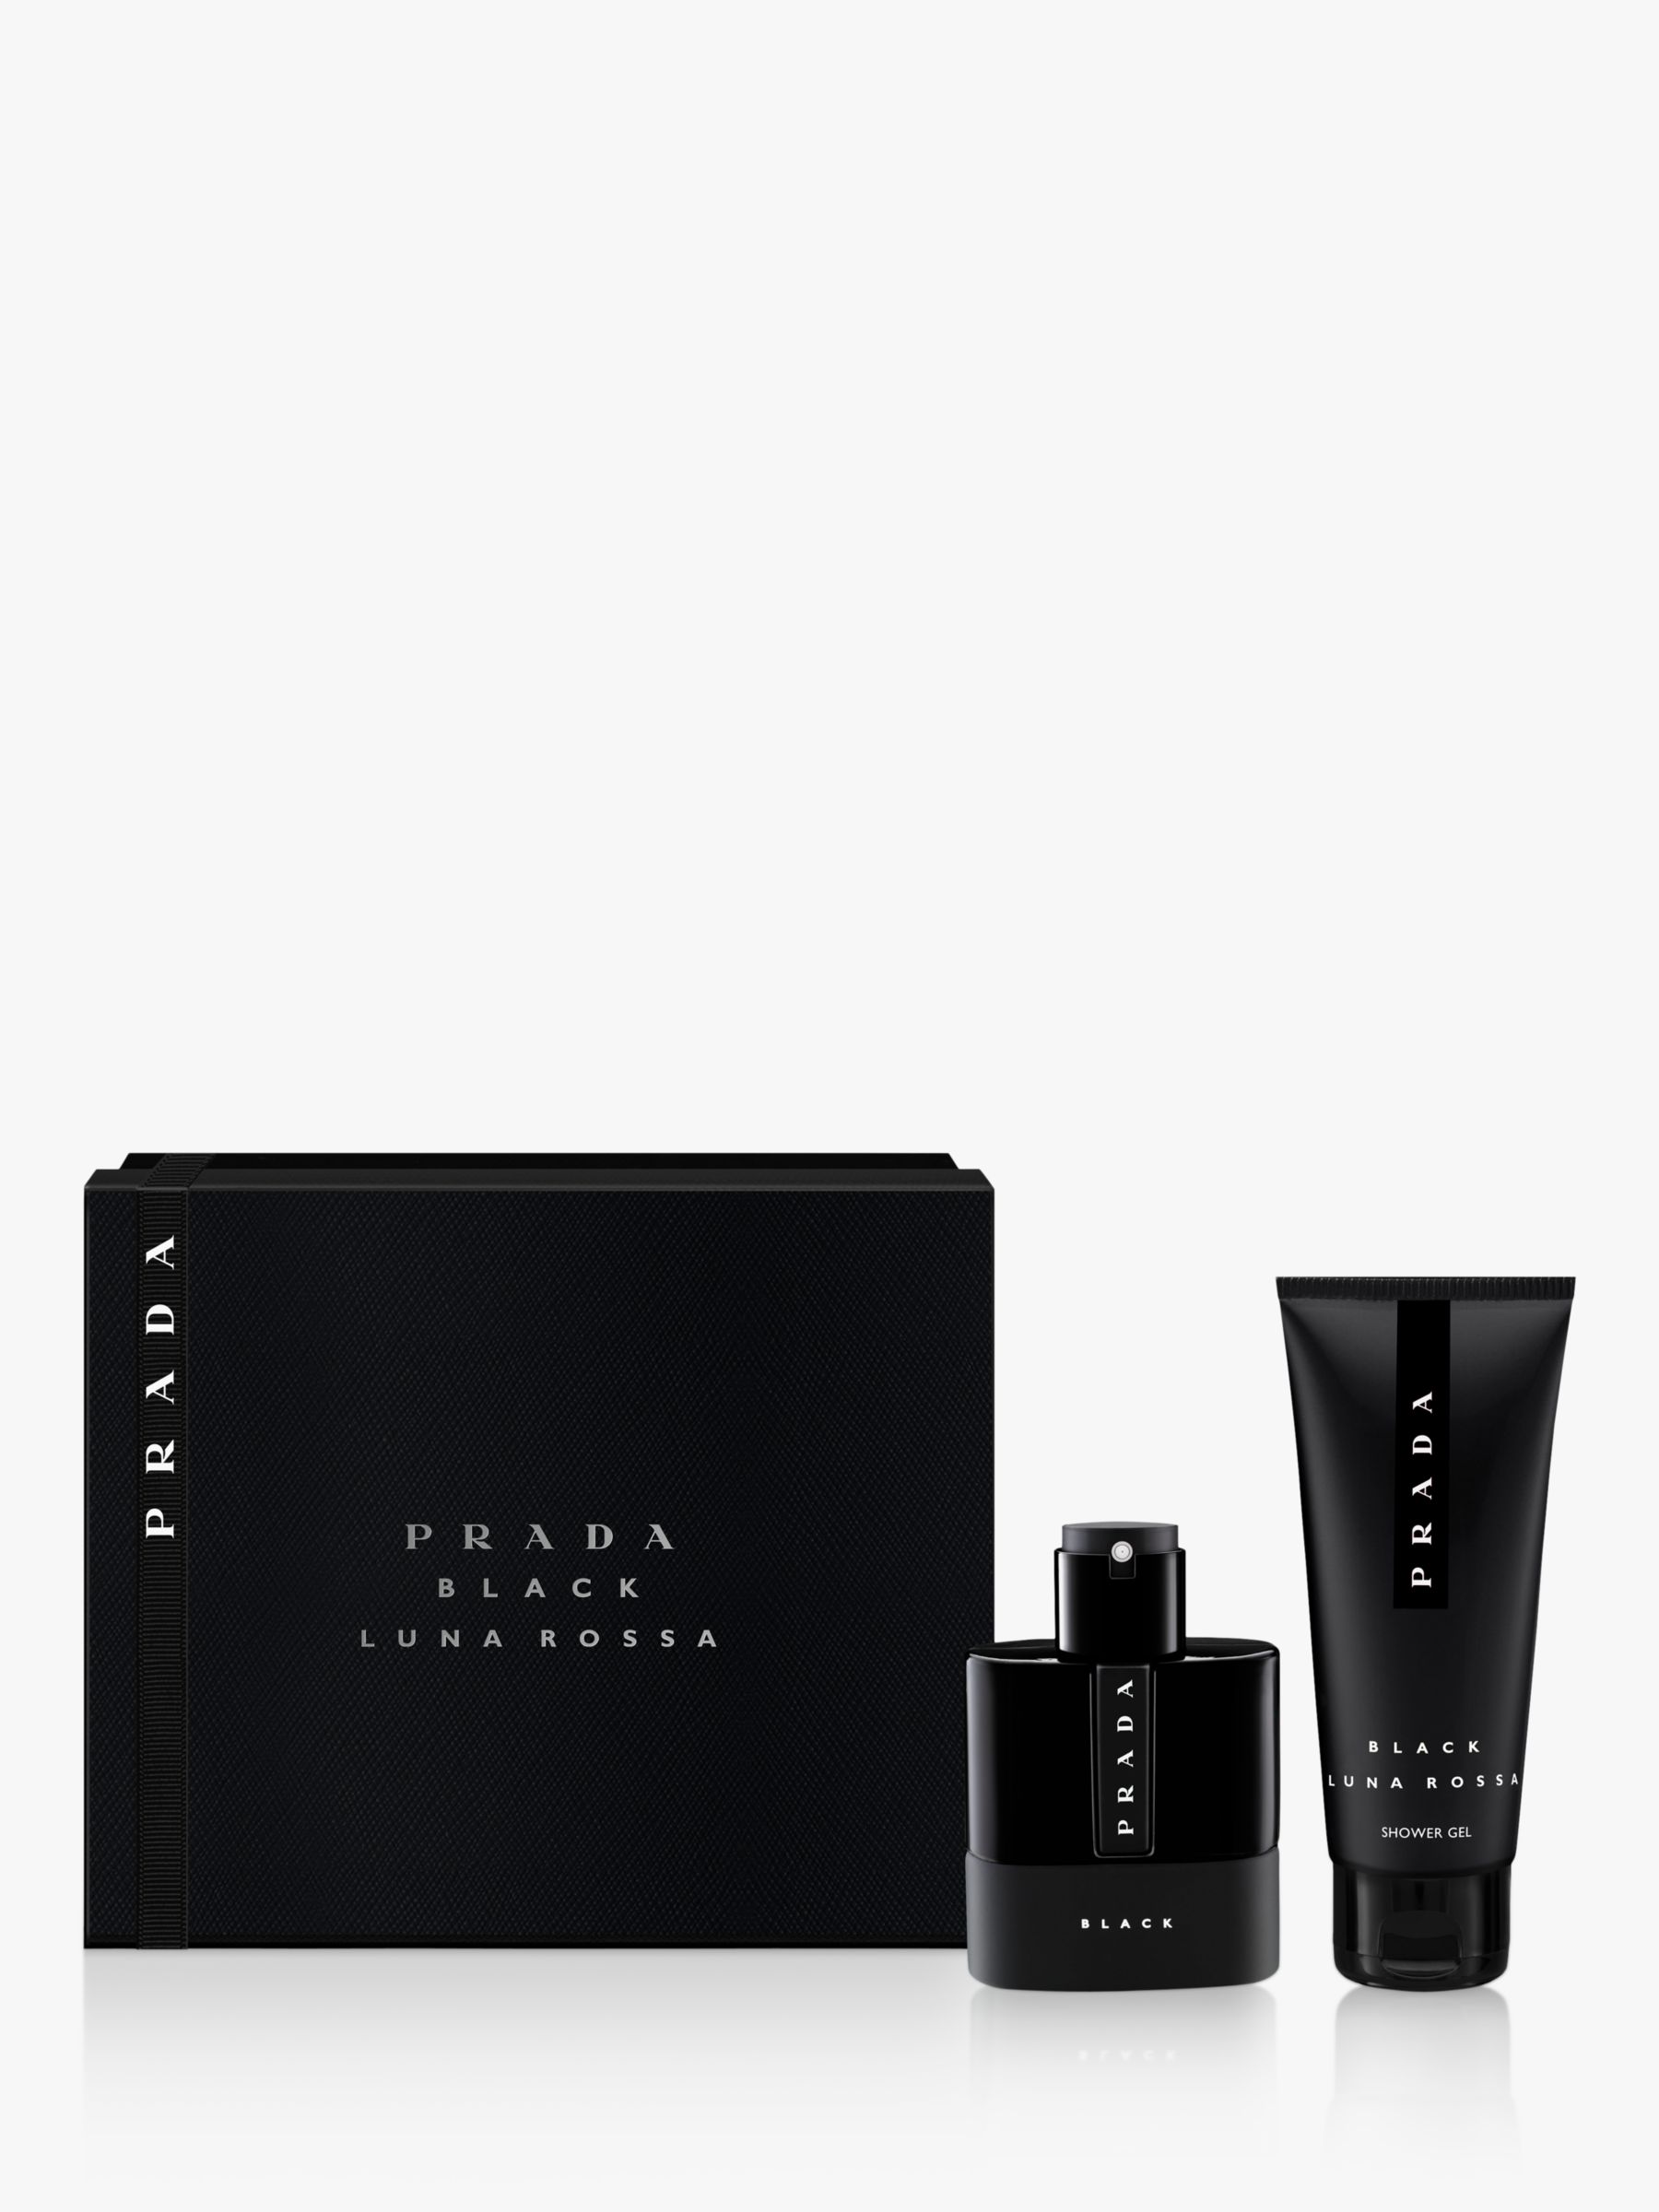 Prada Luna Rossa Black Eau de Parfum 50ml Fragrance Gift Set